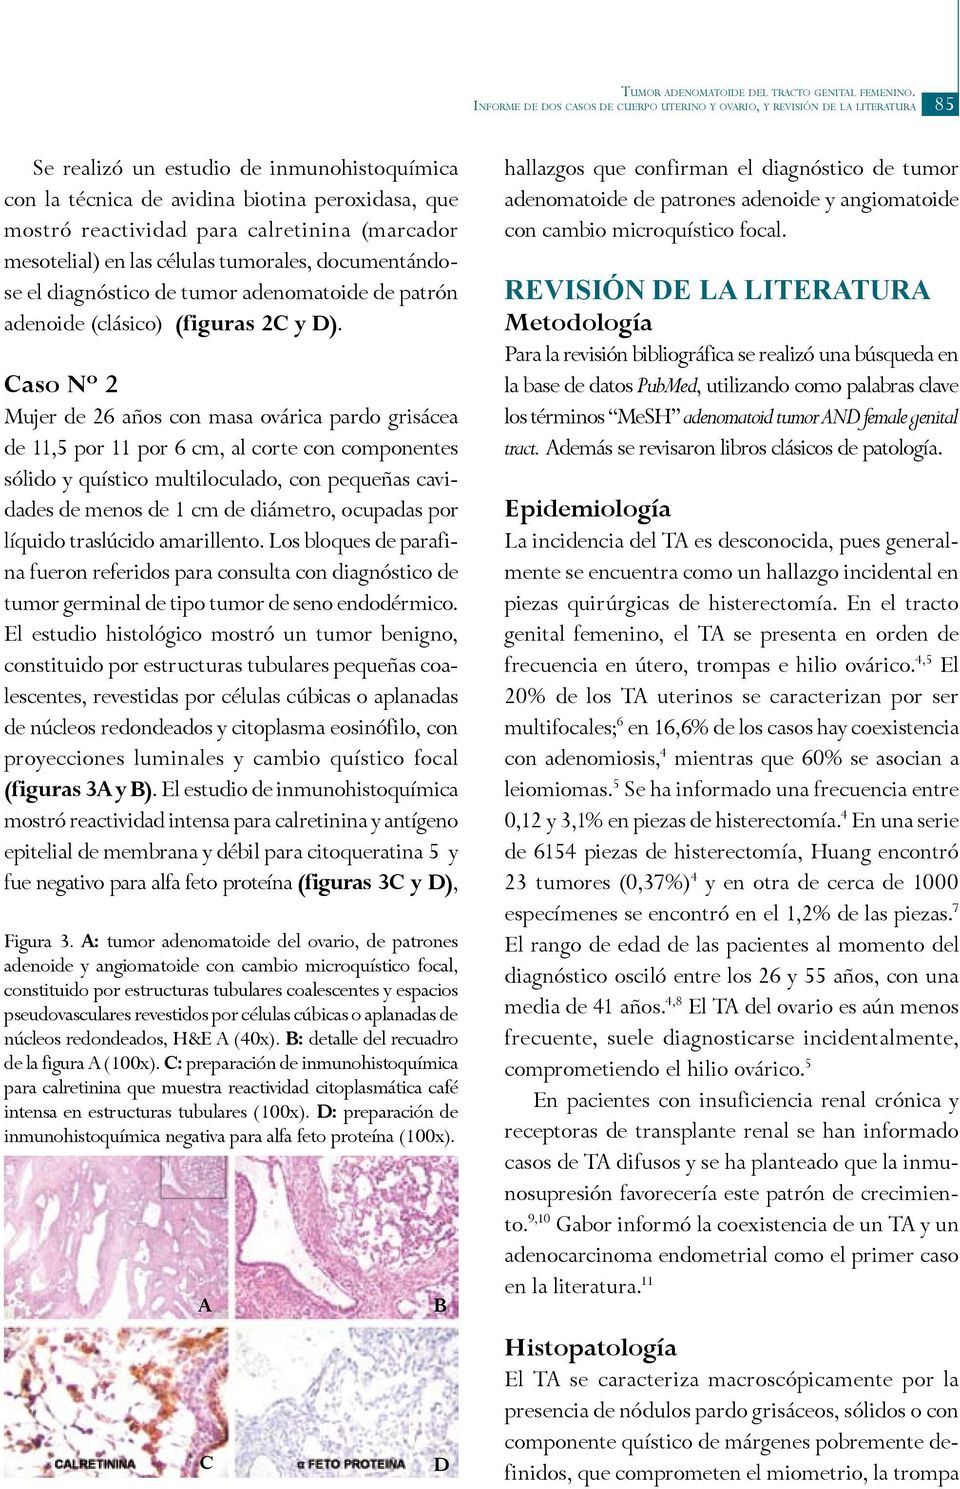 calretinina (marcador mesotelial) en las células tumorales, documentándose el diagnóstico de tumor adenomatoide de patrón adenoide (clásico) (figuras 2C y D).